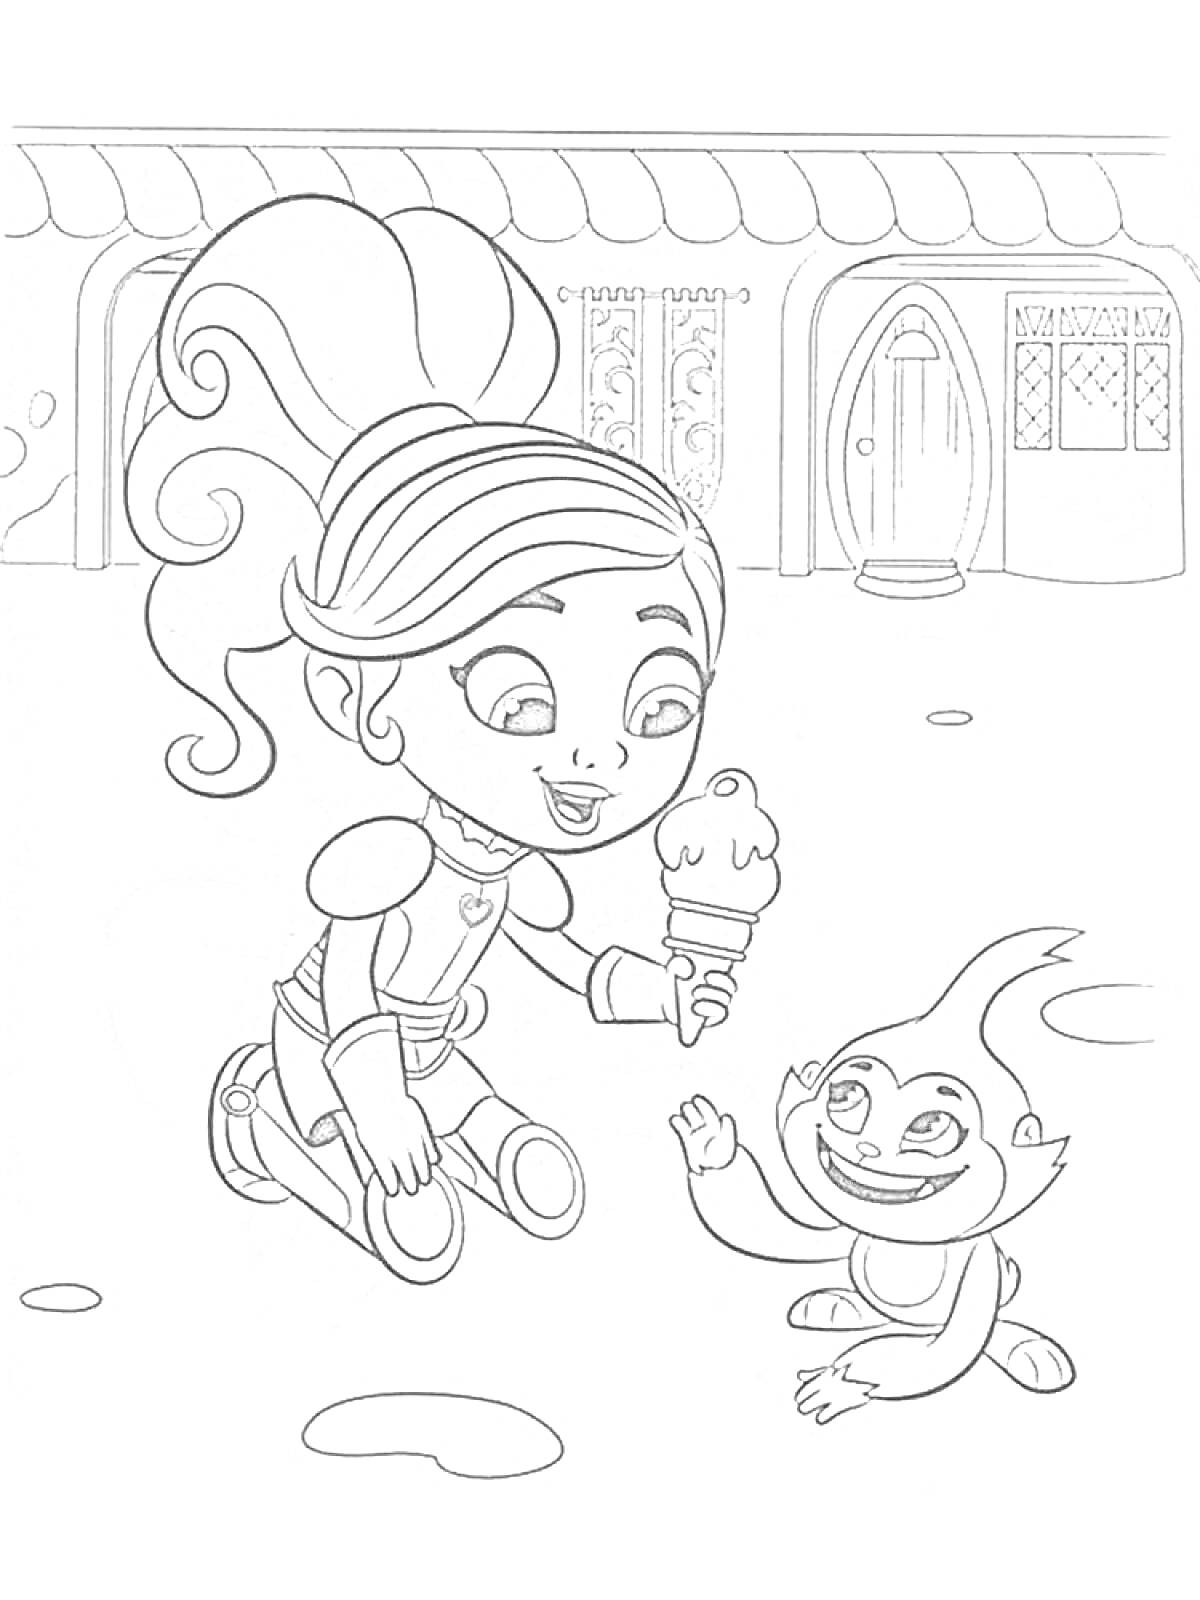 Раскраска Принцесса рыцарь Нелла с мороженым и маленьким существом перед домом